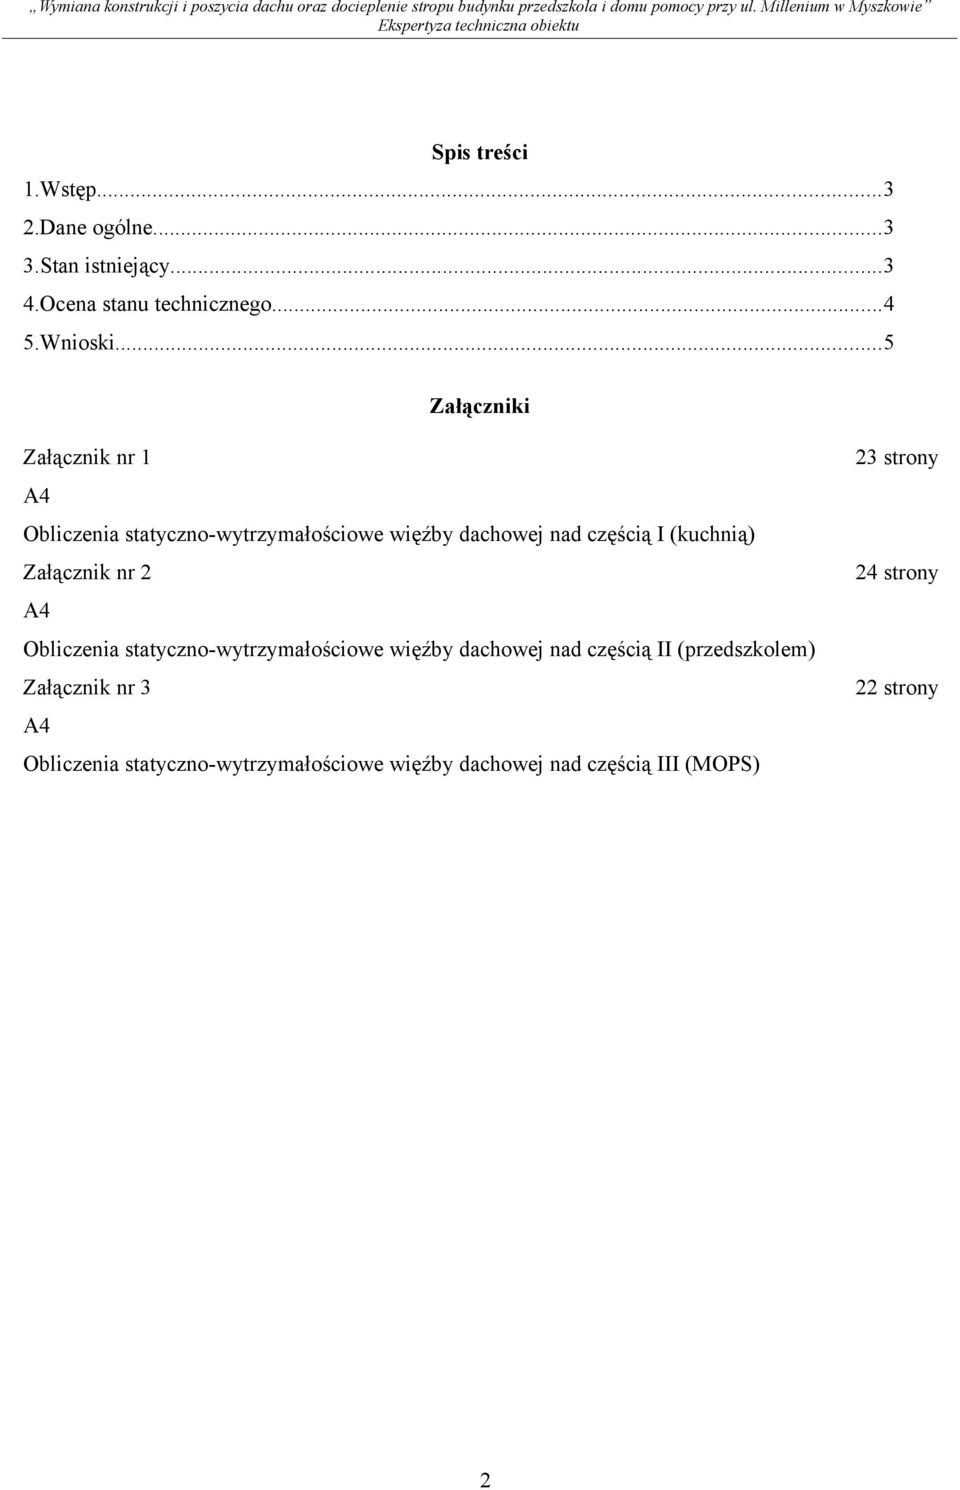 Załącznik nr 2 A4 Obliczenia statyczno-wytrzymałościowe więźby dachowej nad częścią II (przedszkolem)